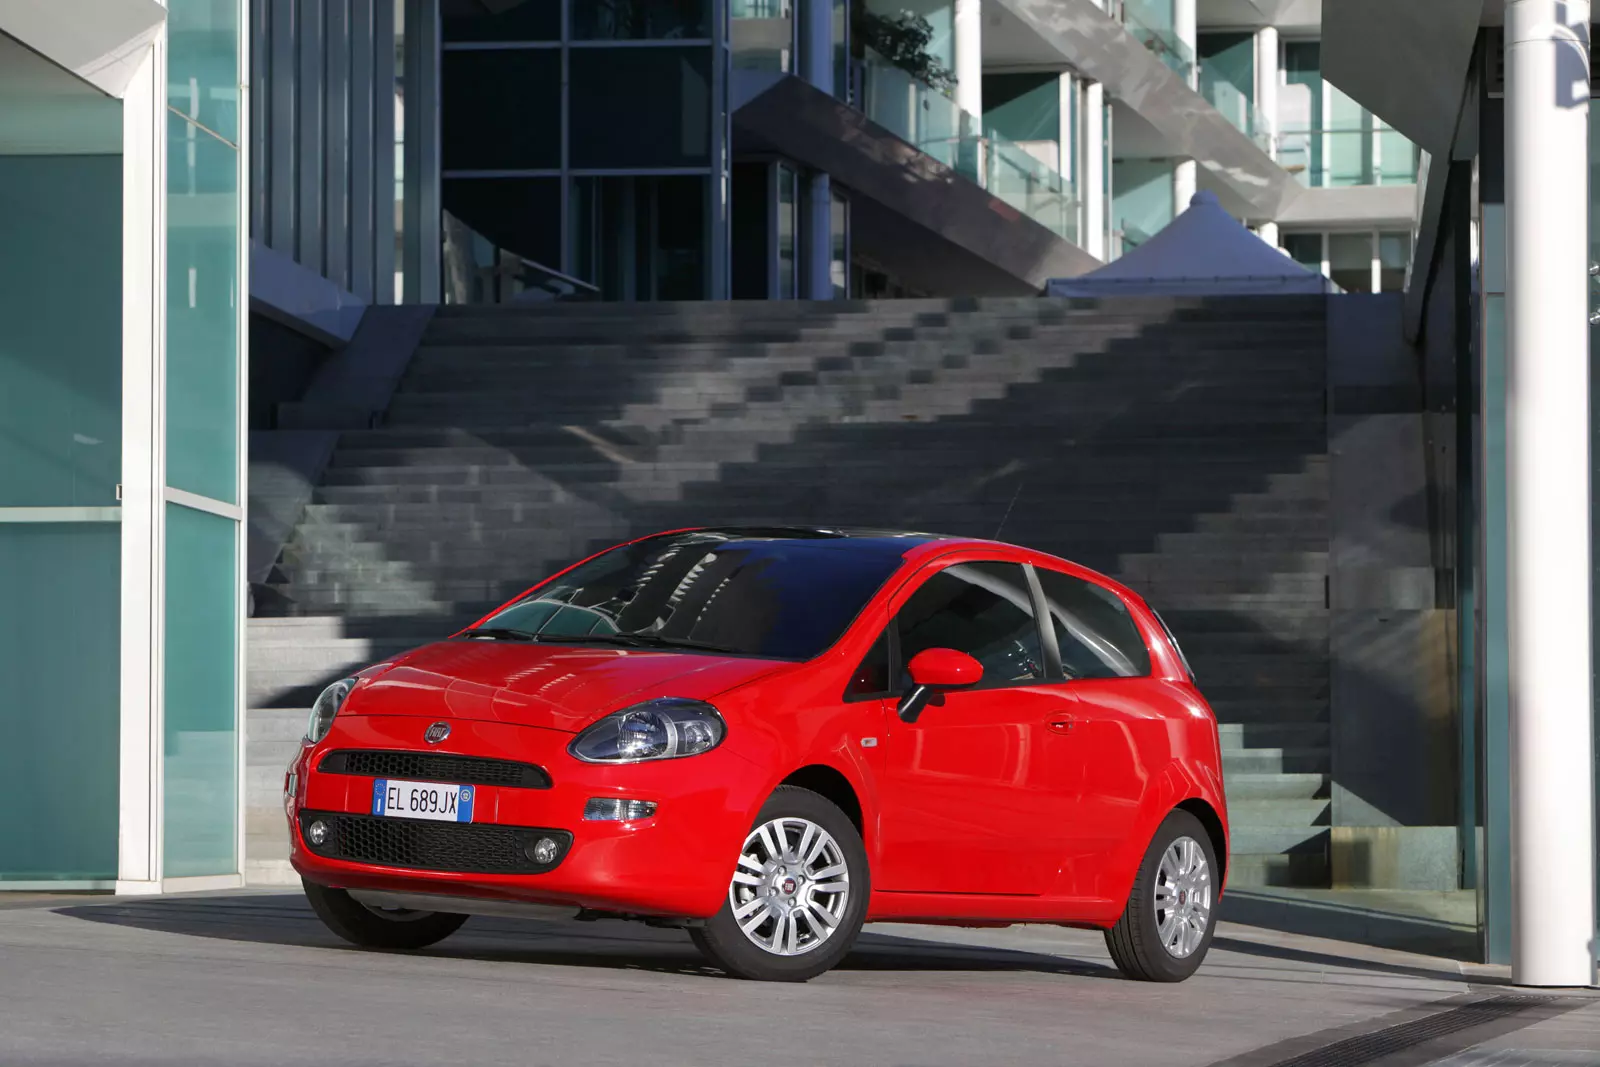 Fiat Punto 1.4 (77 KM) z LPG - ile to kosztuje?